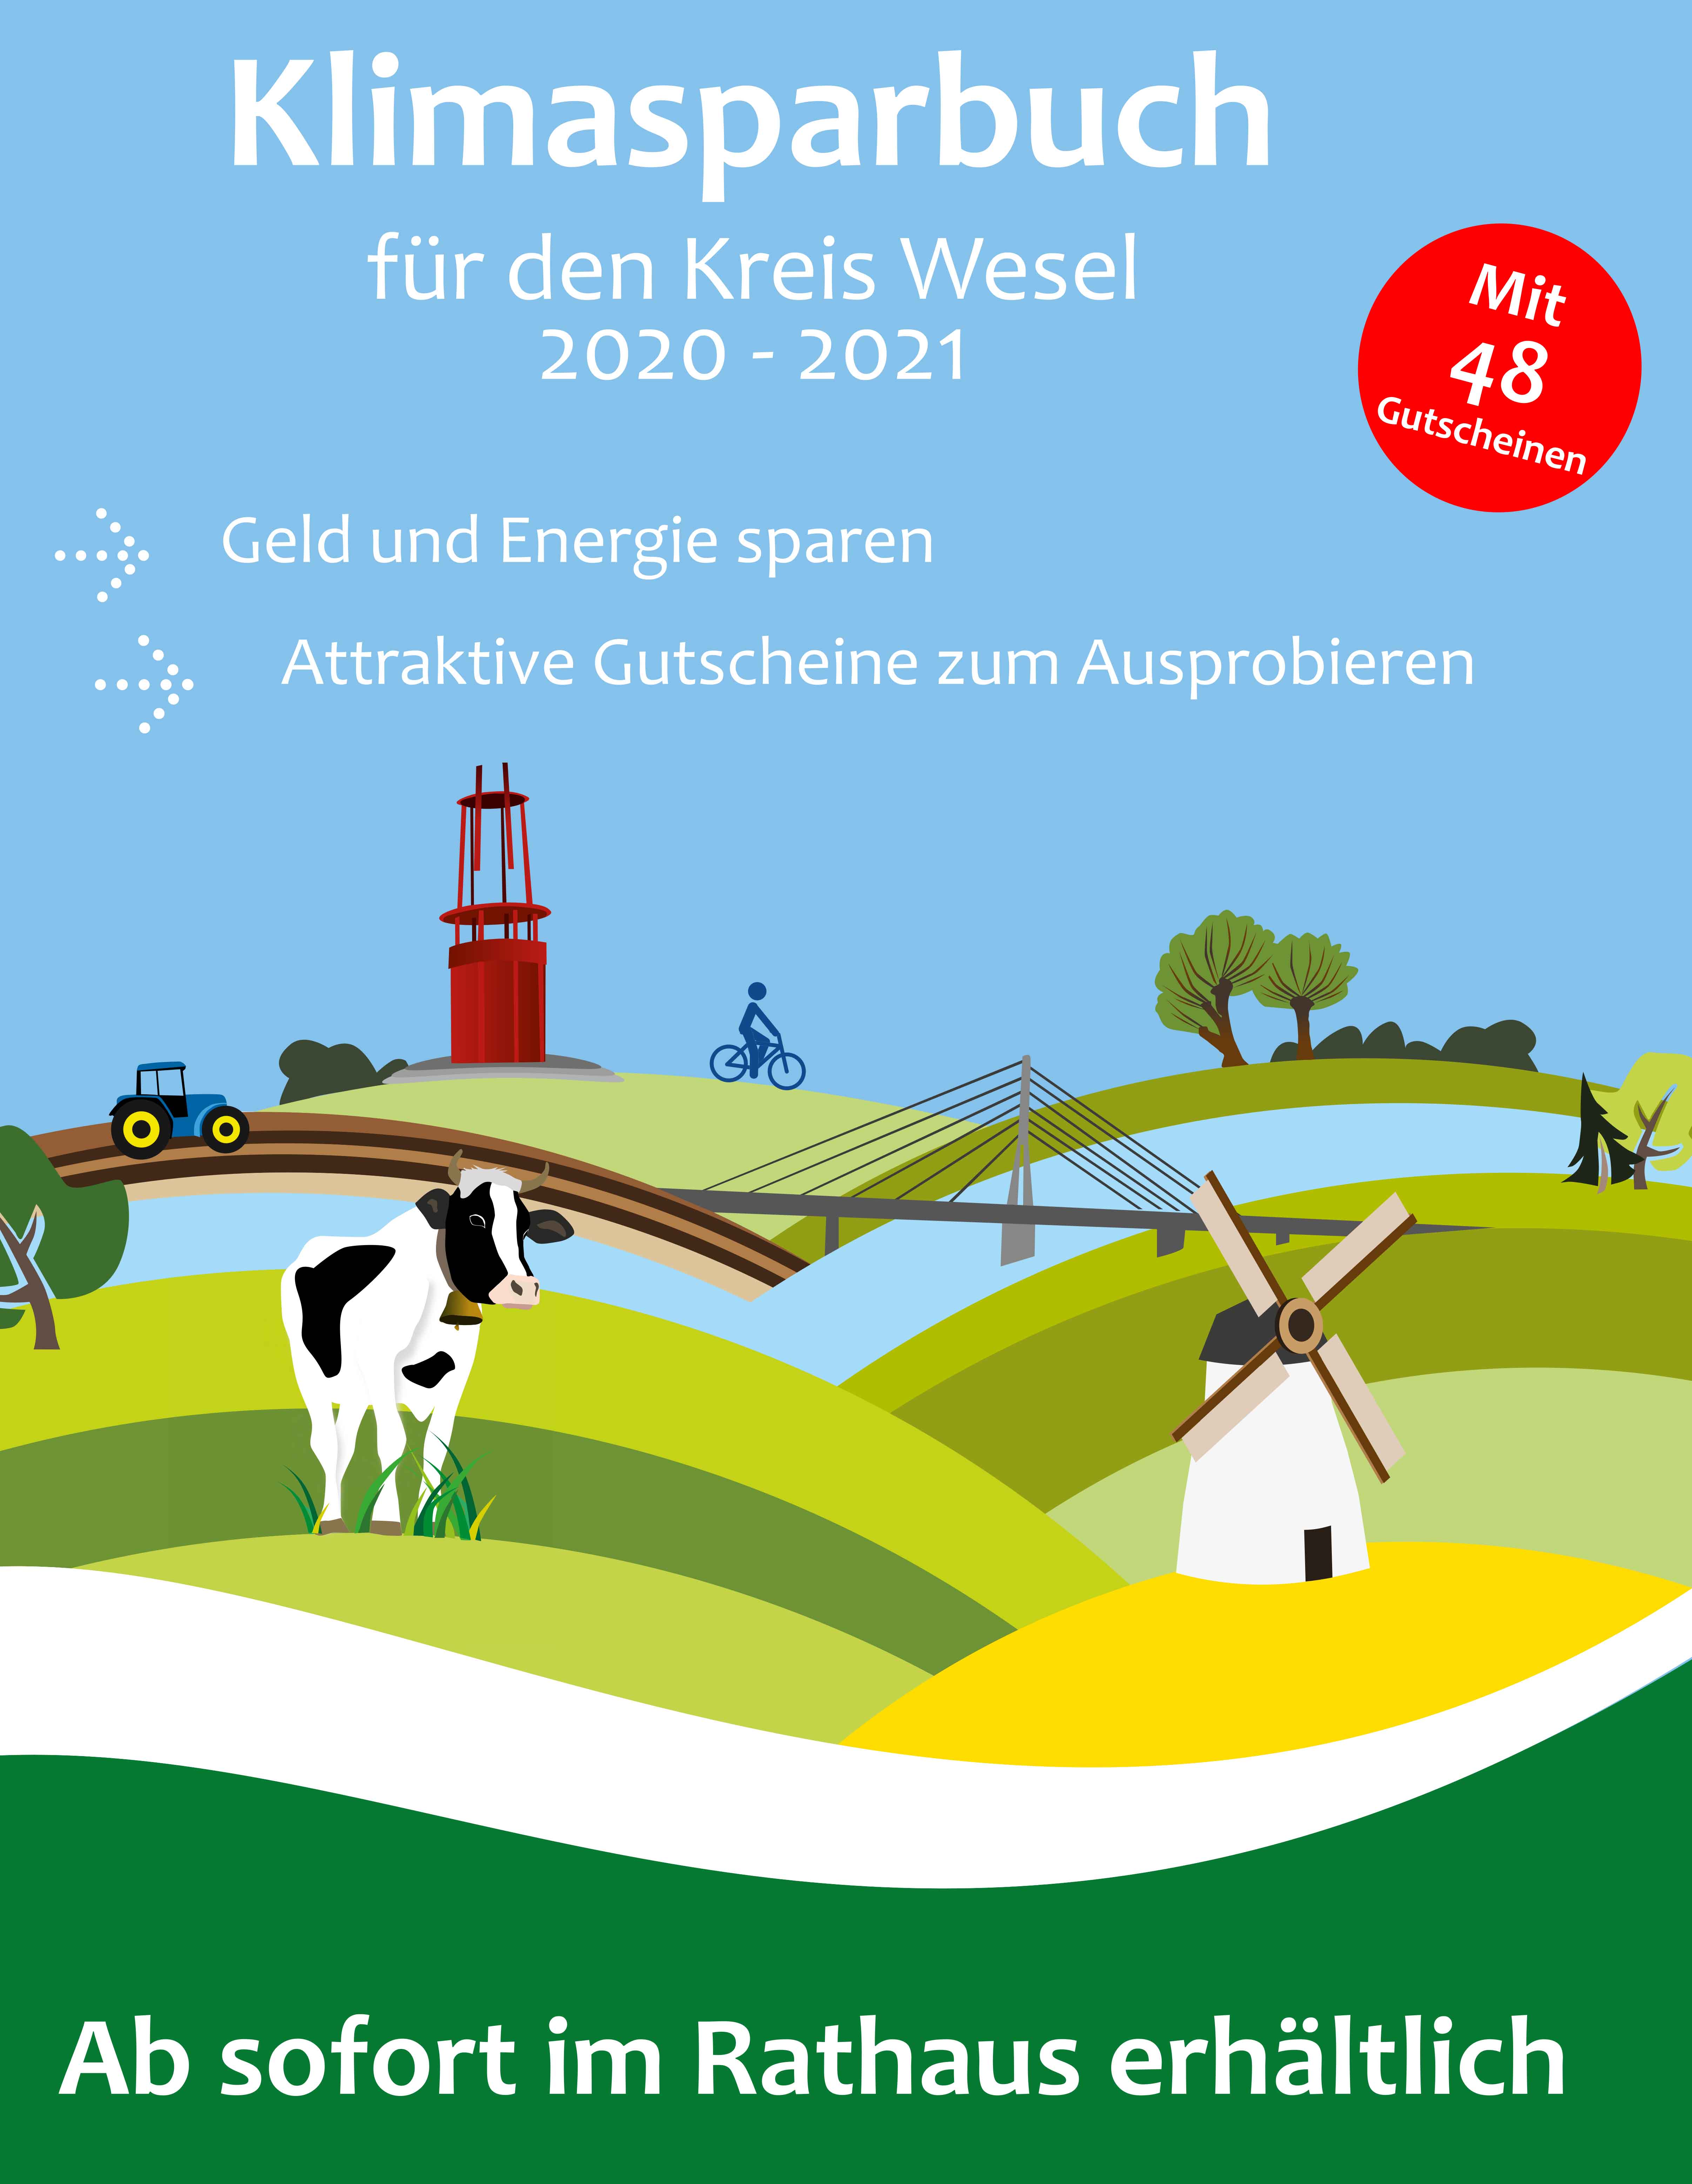 Klimasparbuch für den Kreis Wesel 2020/21